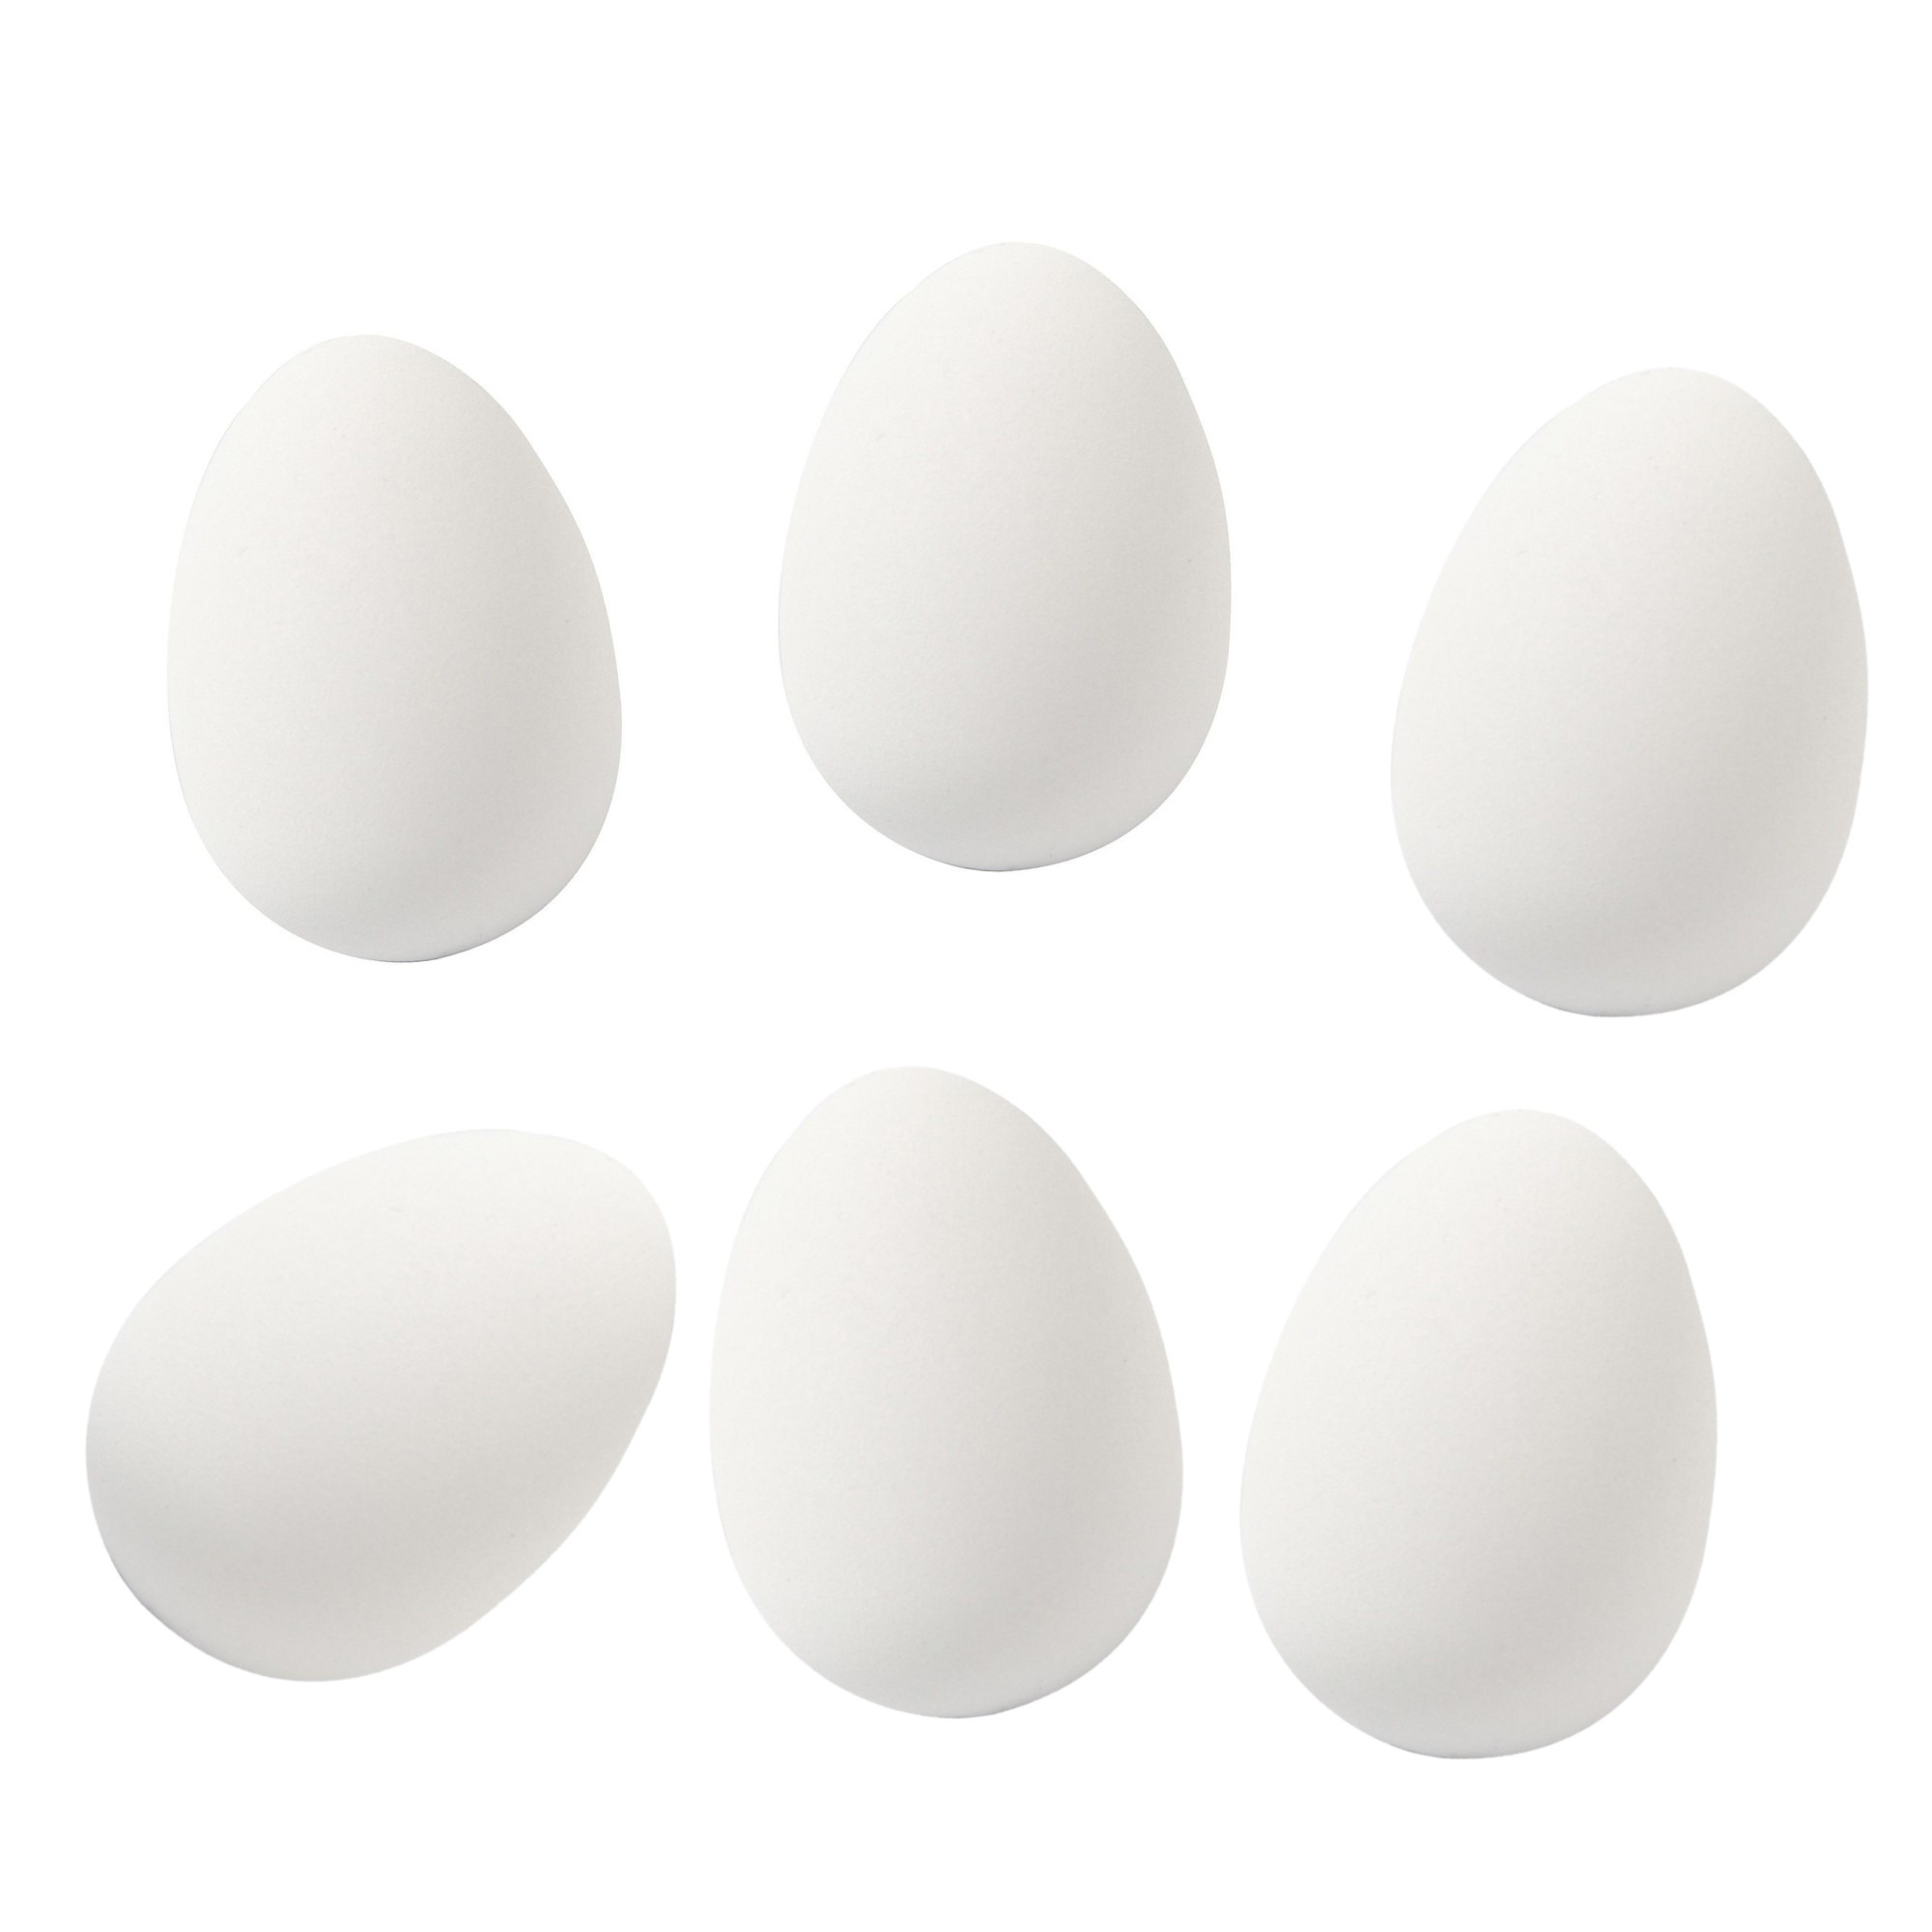 8x Witte kunststof ganzen eieren hobby-knutsel materiaal 8 cm